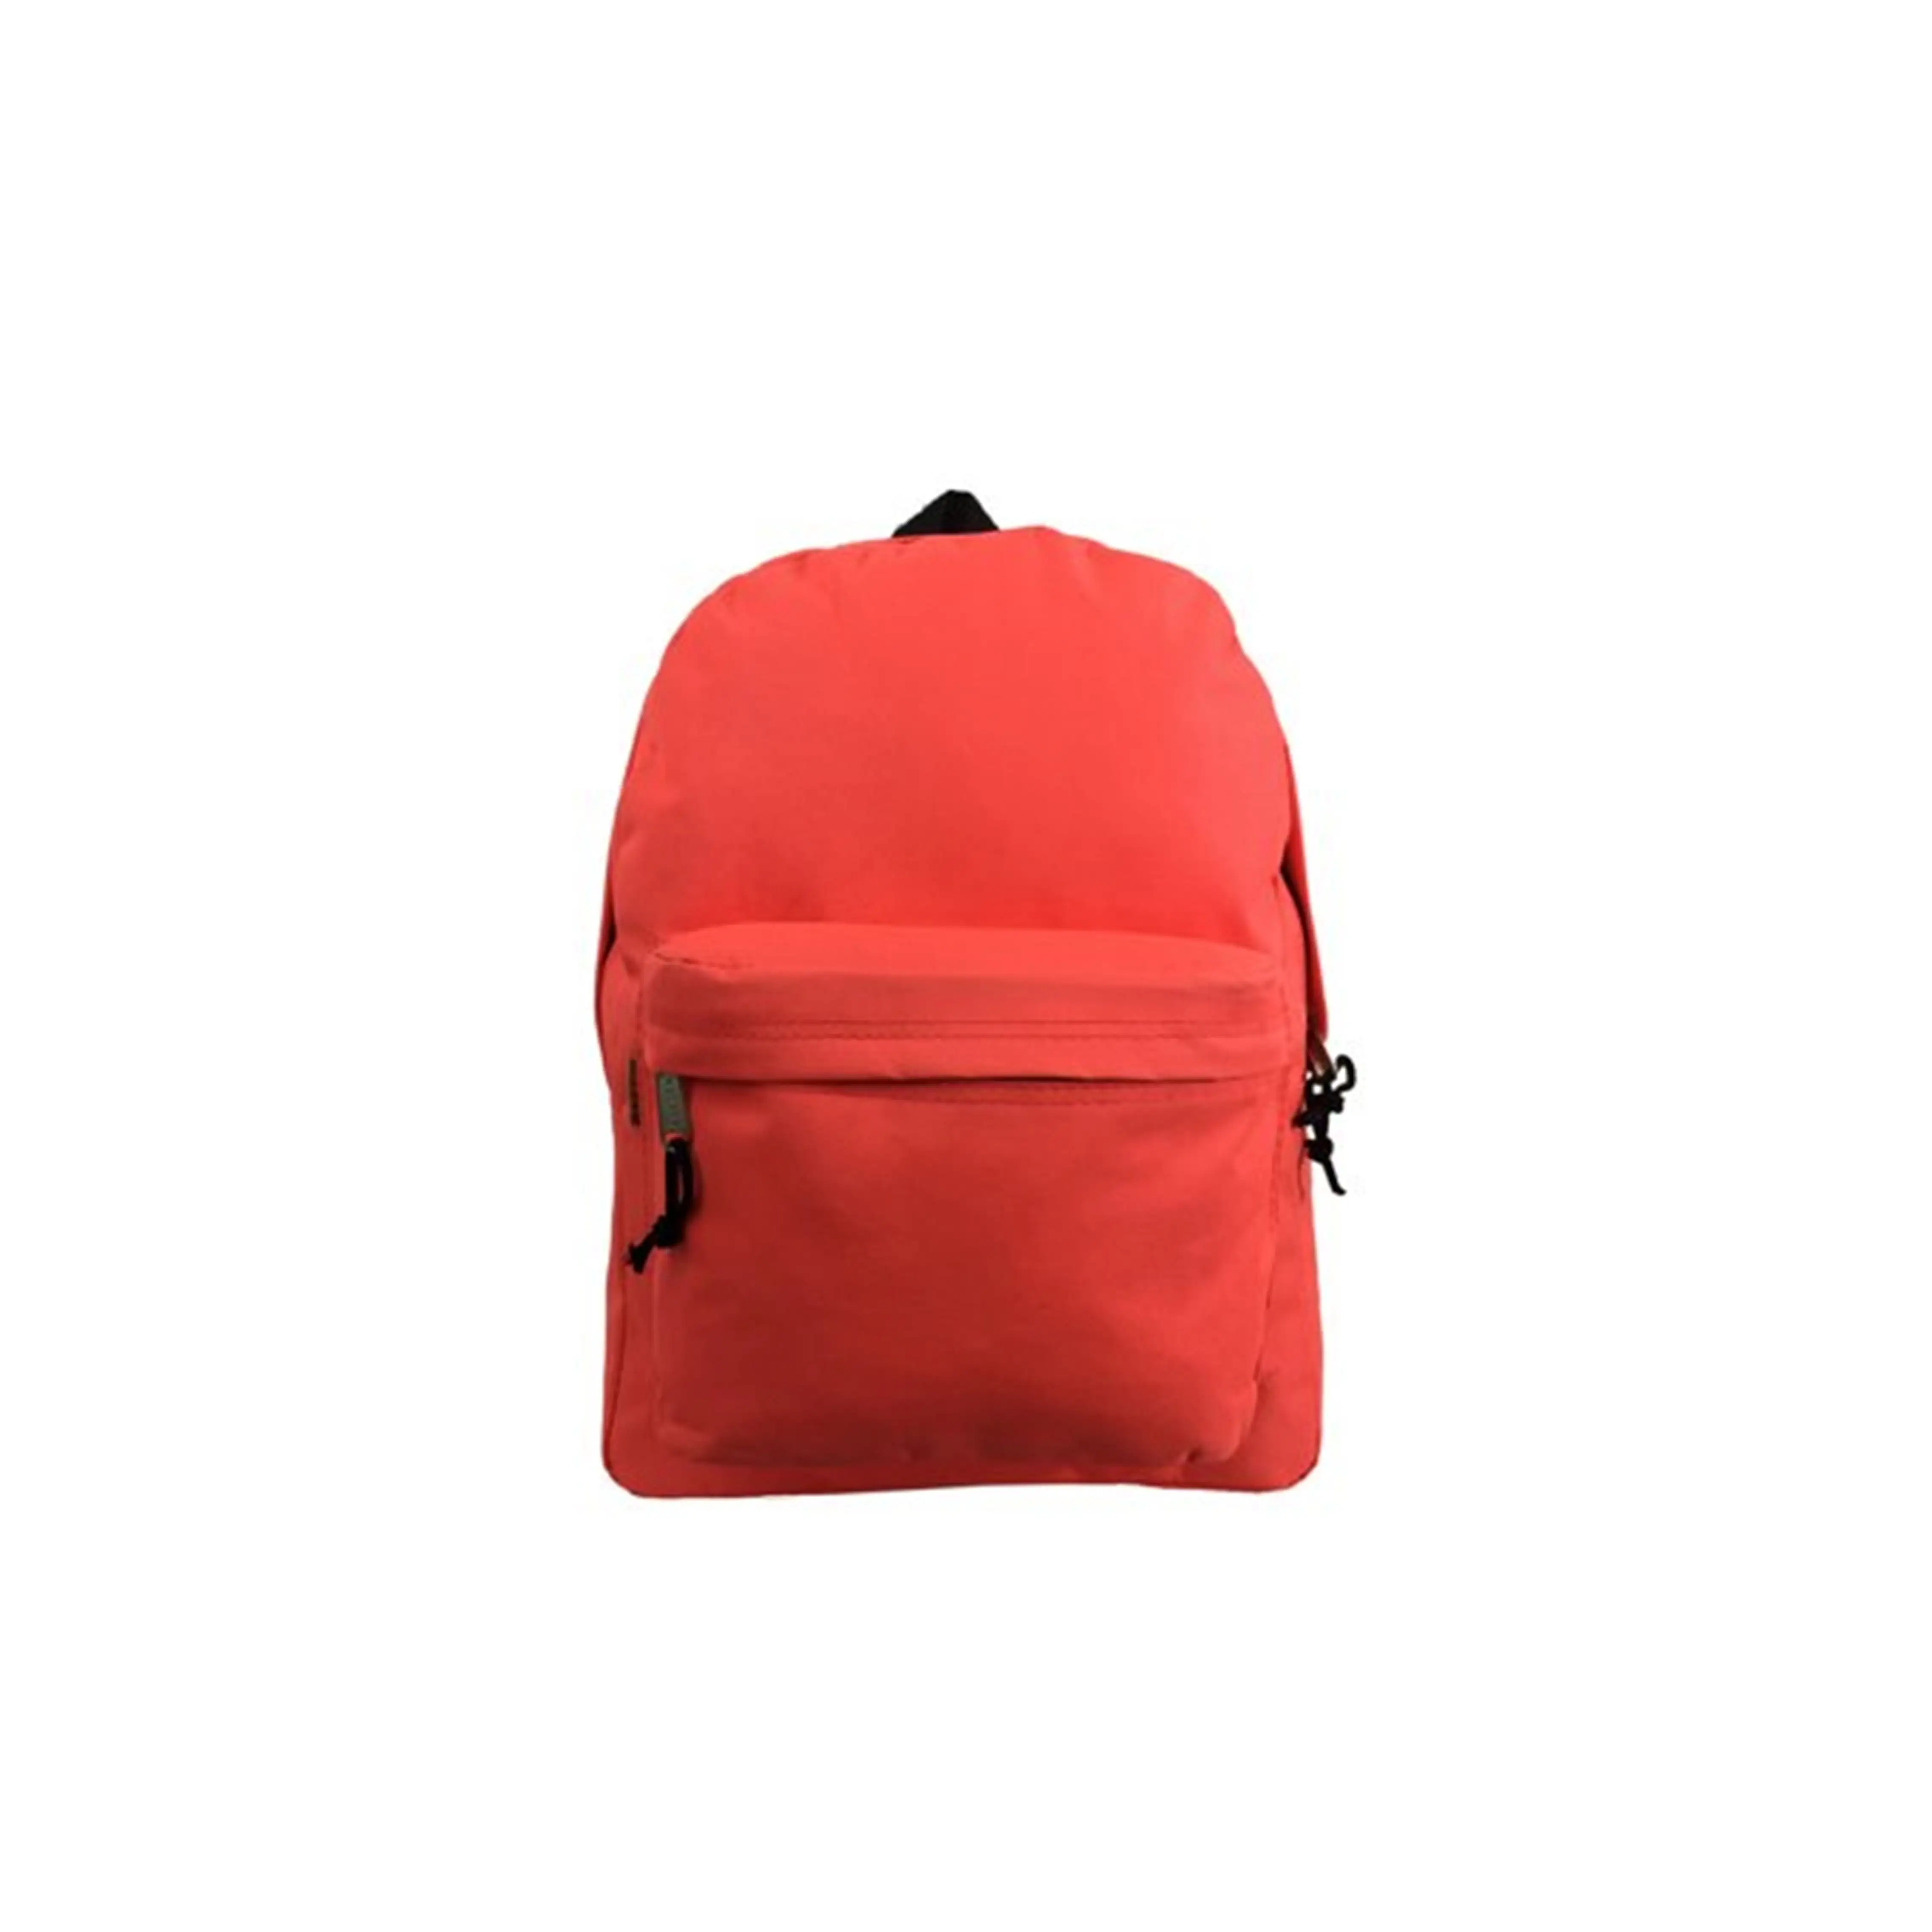 Mais recente Design Tactical Back pack Sports Outdoor Travel Caça Caminhadas Tactical Backpack Bags para Homens Mulheres